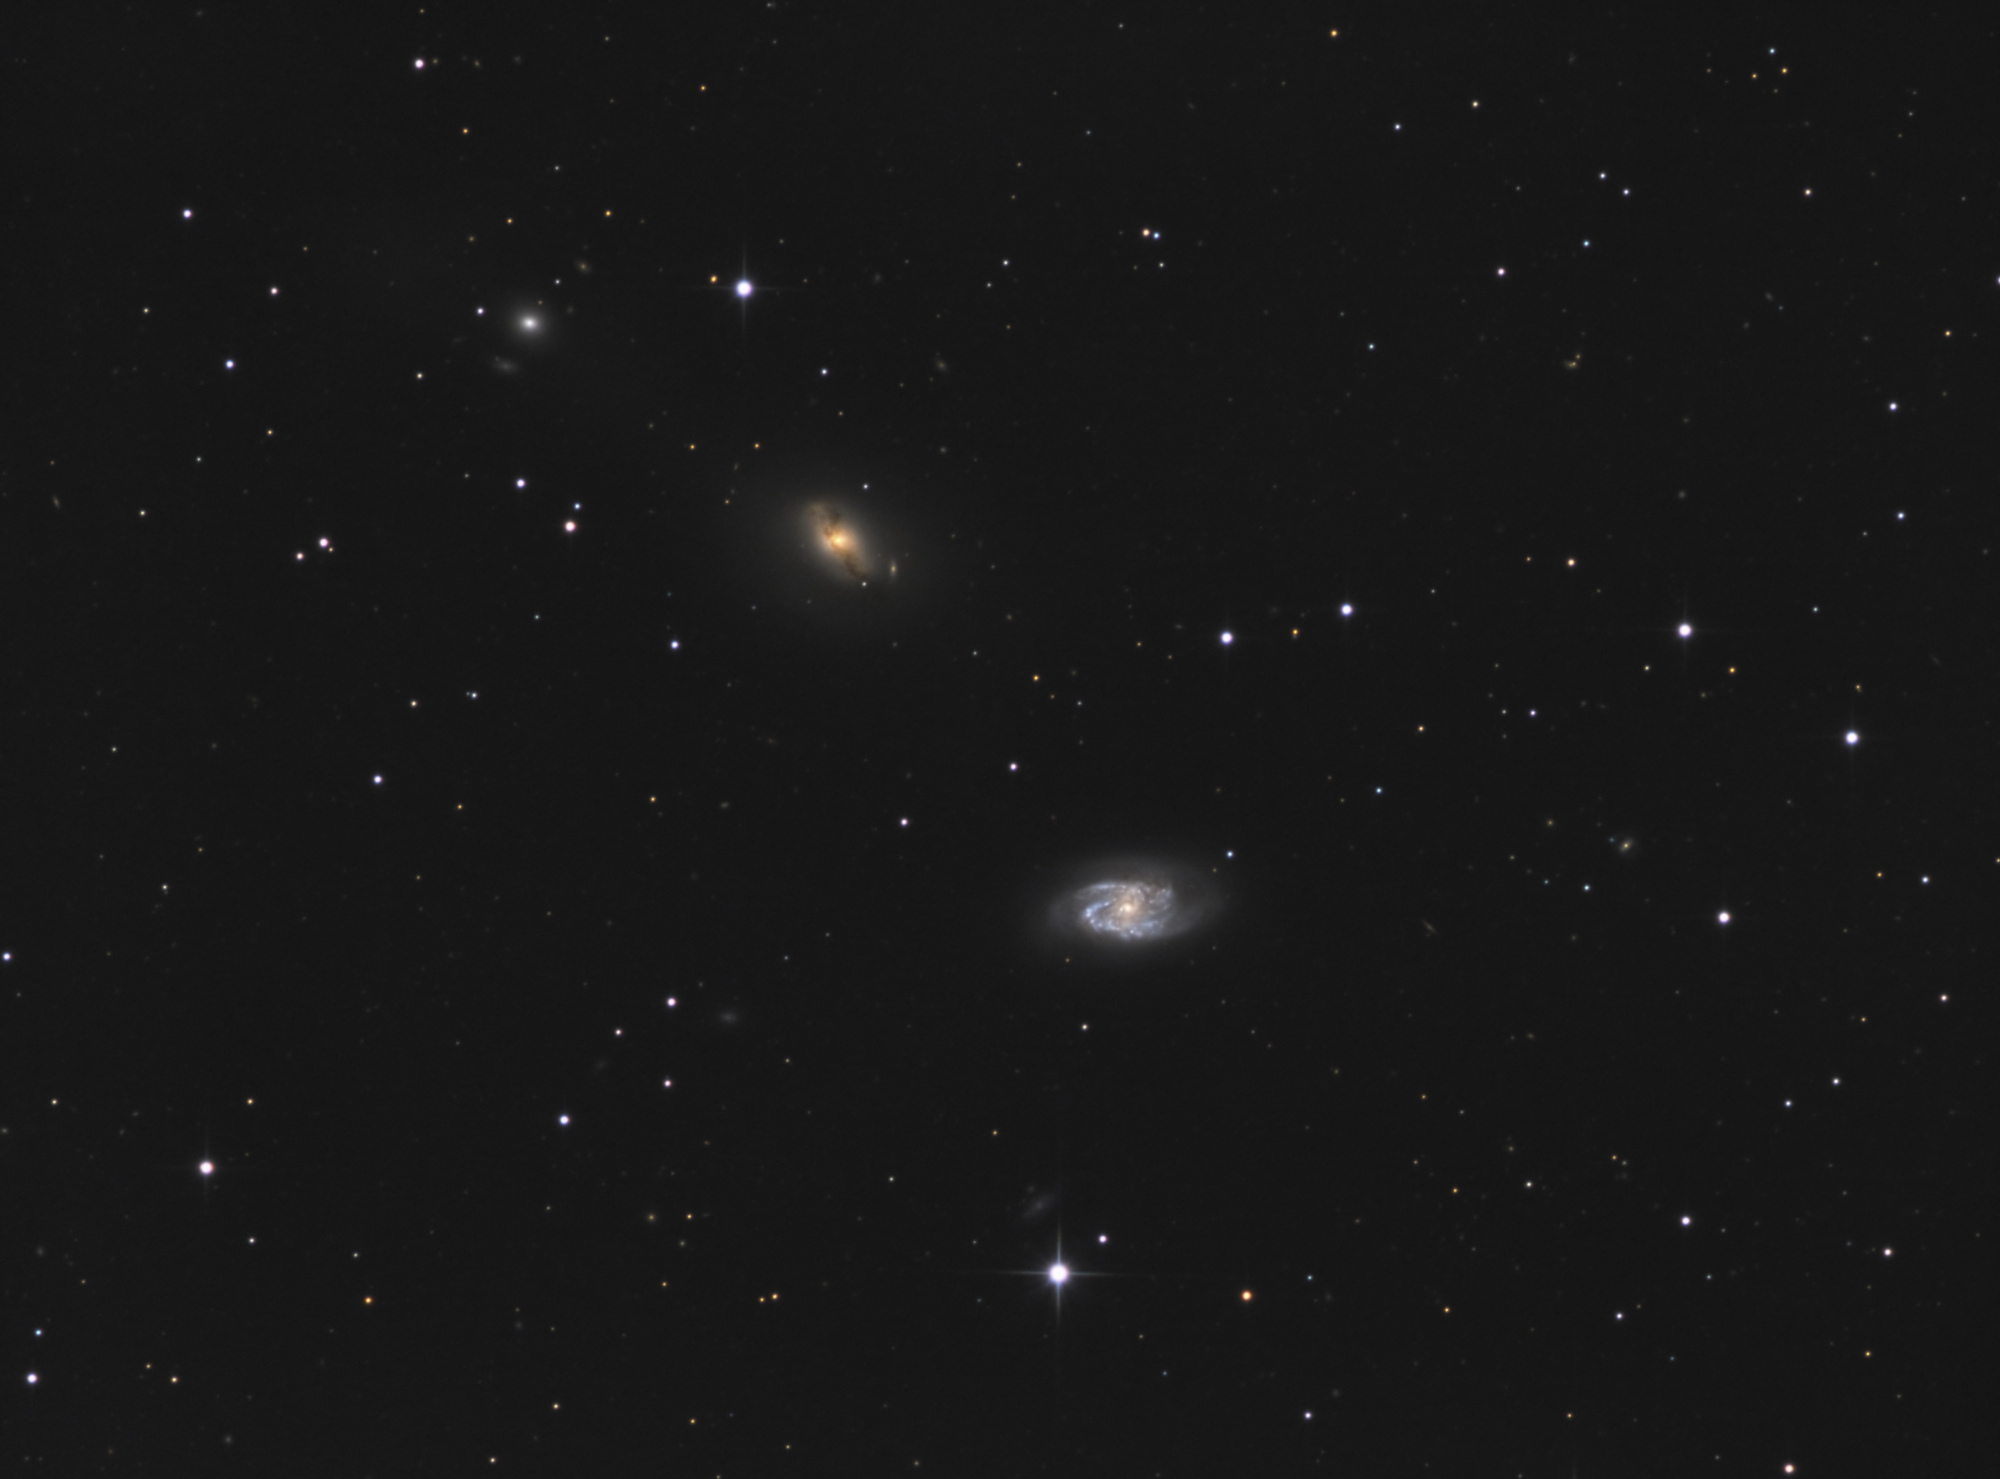 NGC_2964_2968_LRVB_2.thumb.jpg.6512e6a48ddcc72b758e55558531cadc.jpg